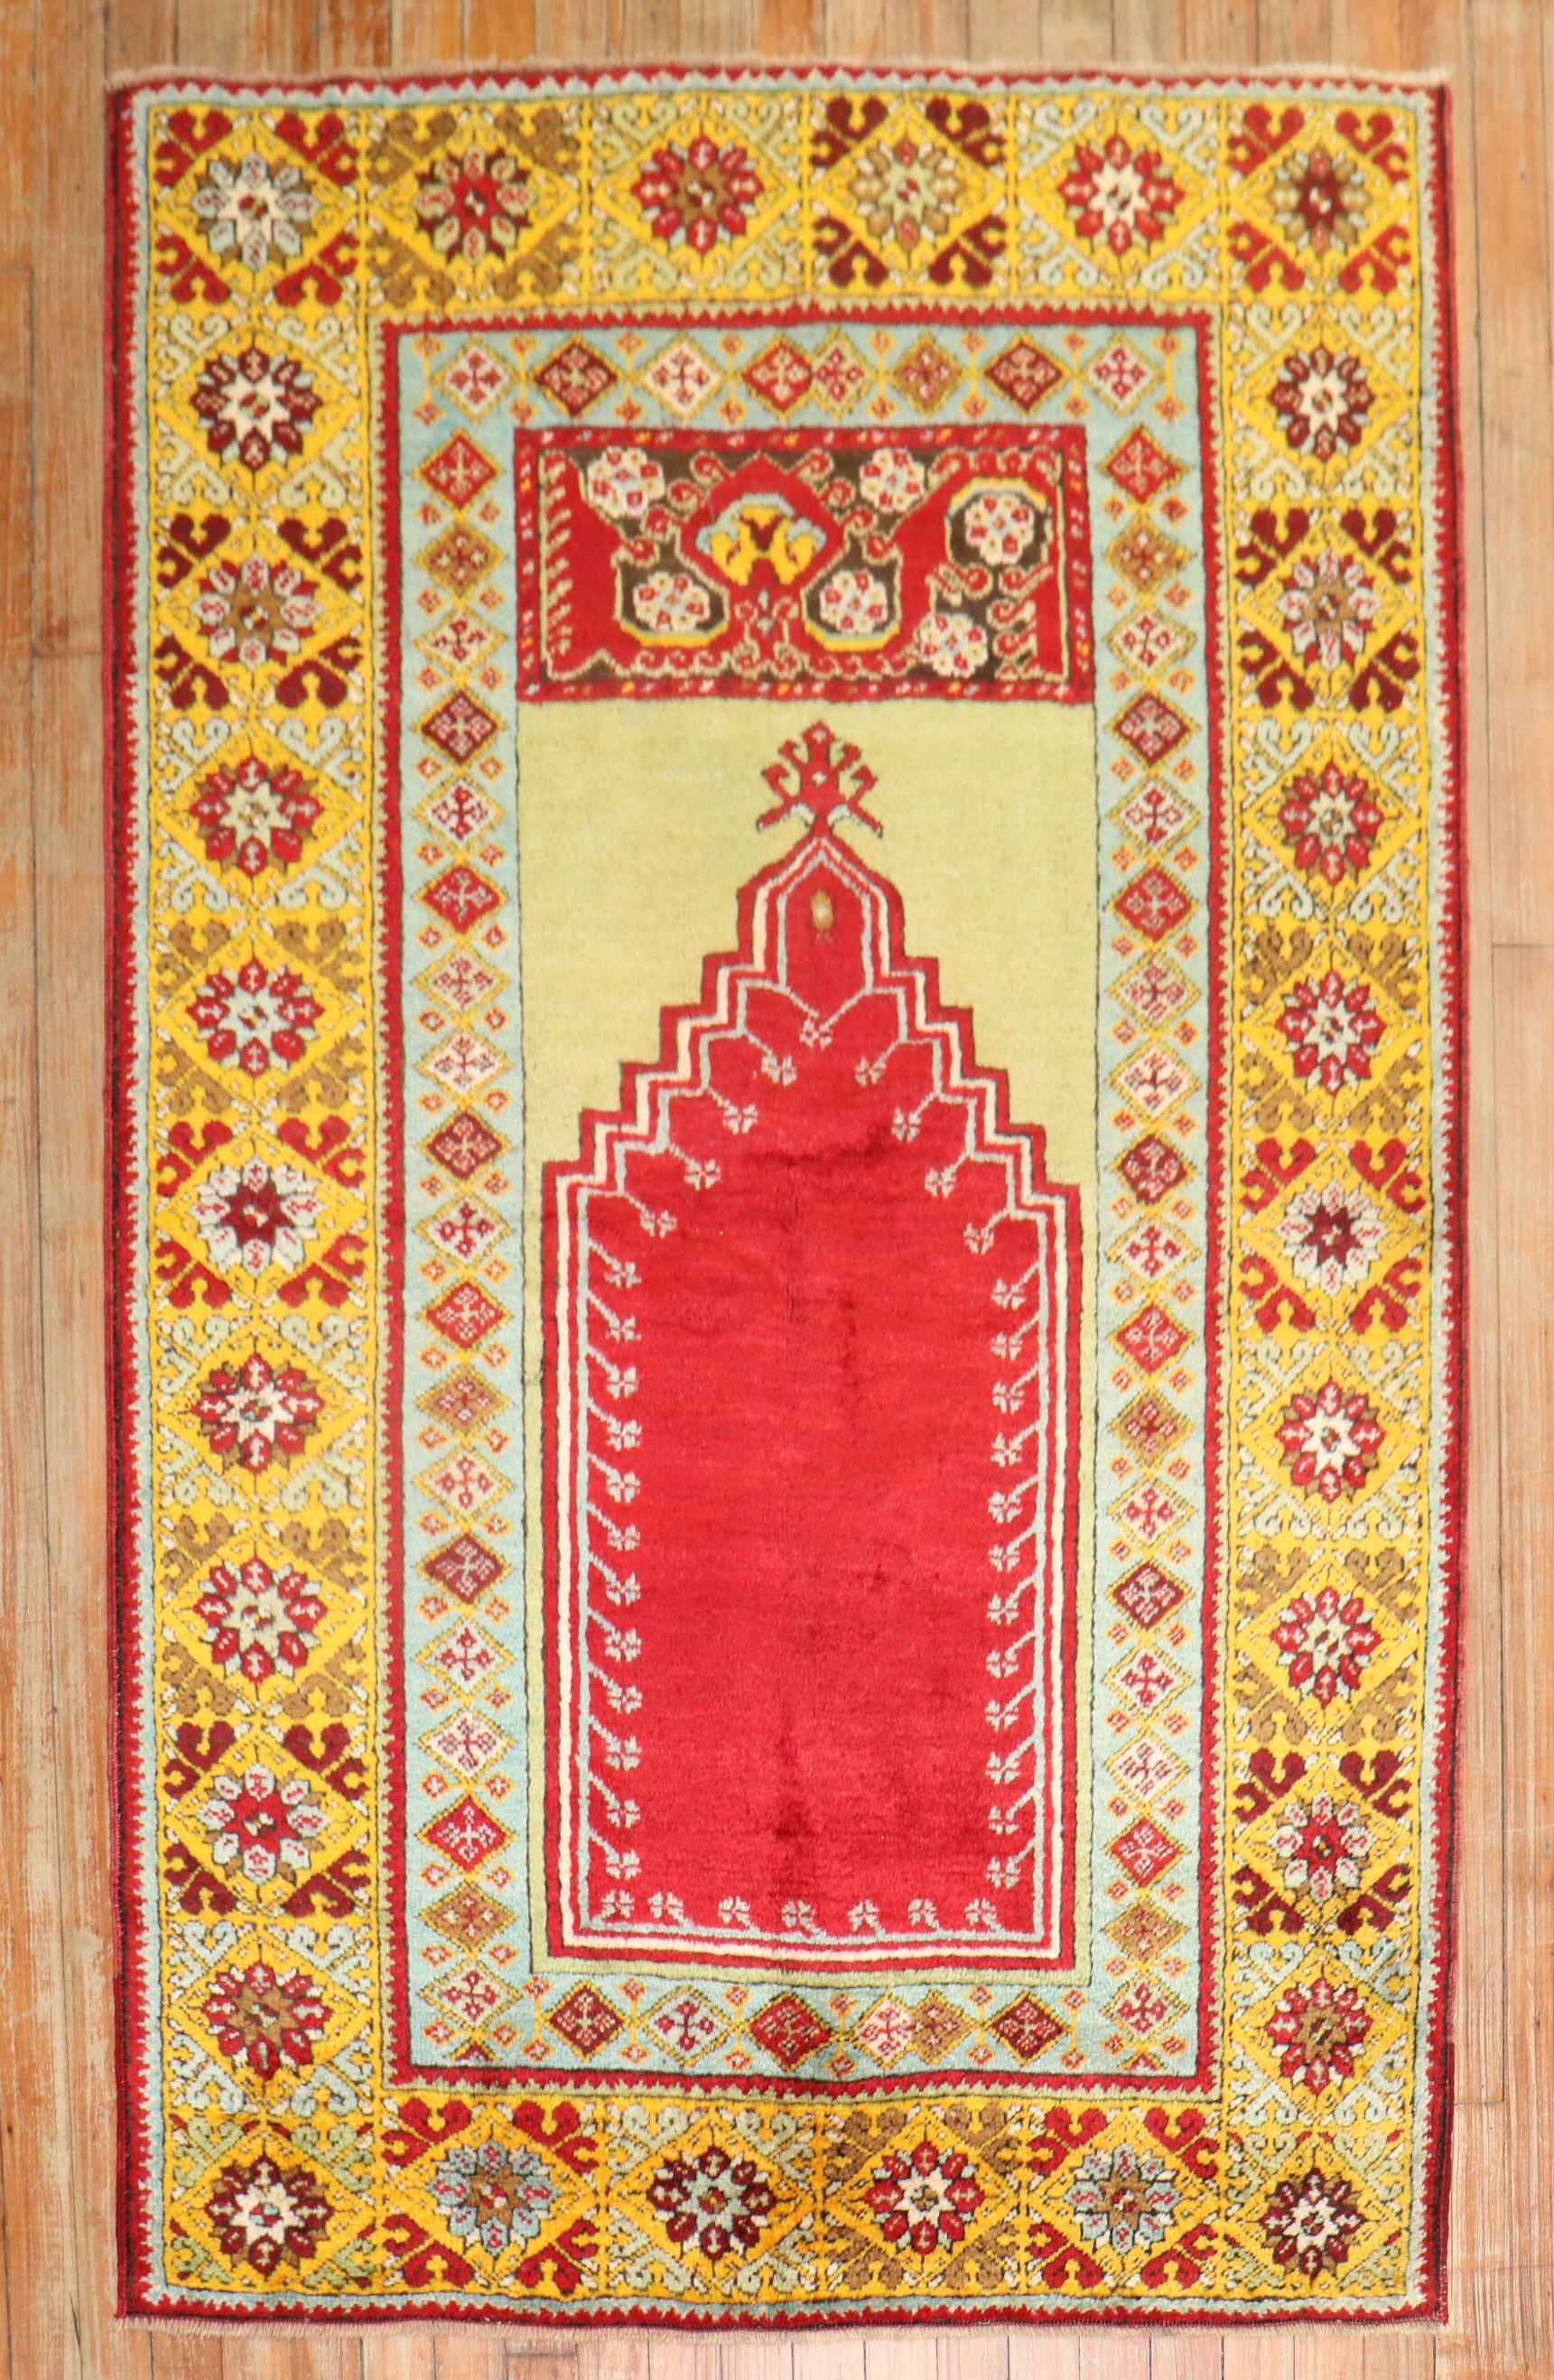 Magnifique tapis de prière turc Oushak coloré du début du 20e siècle,

Mesures : 3'7'' x 5'6''.